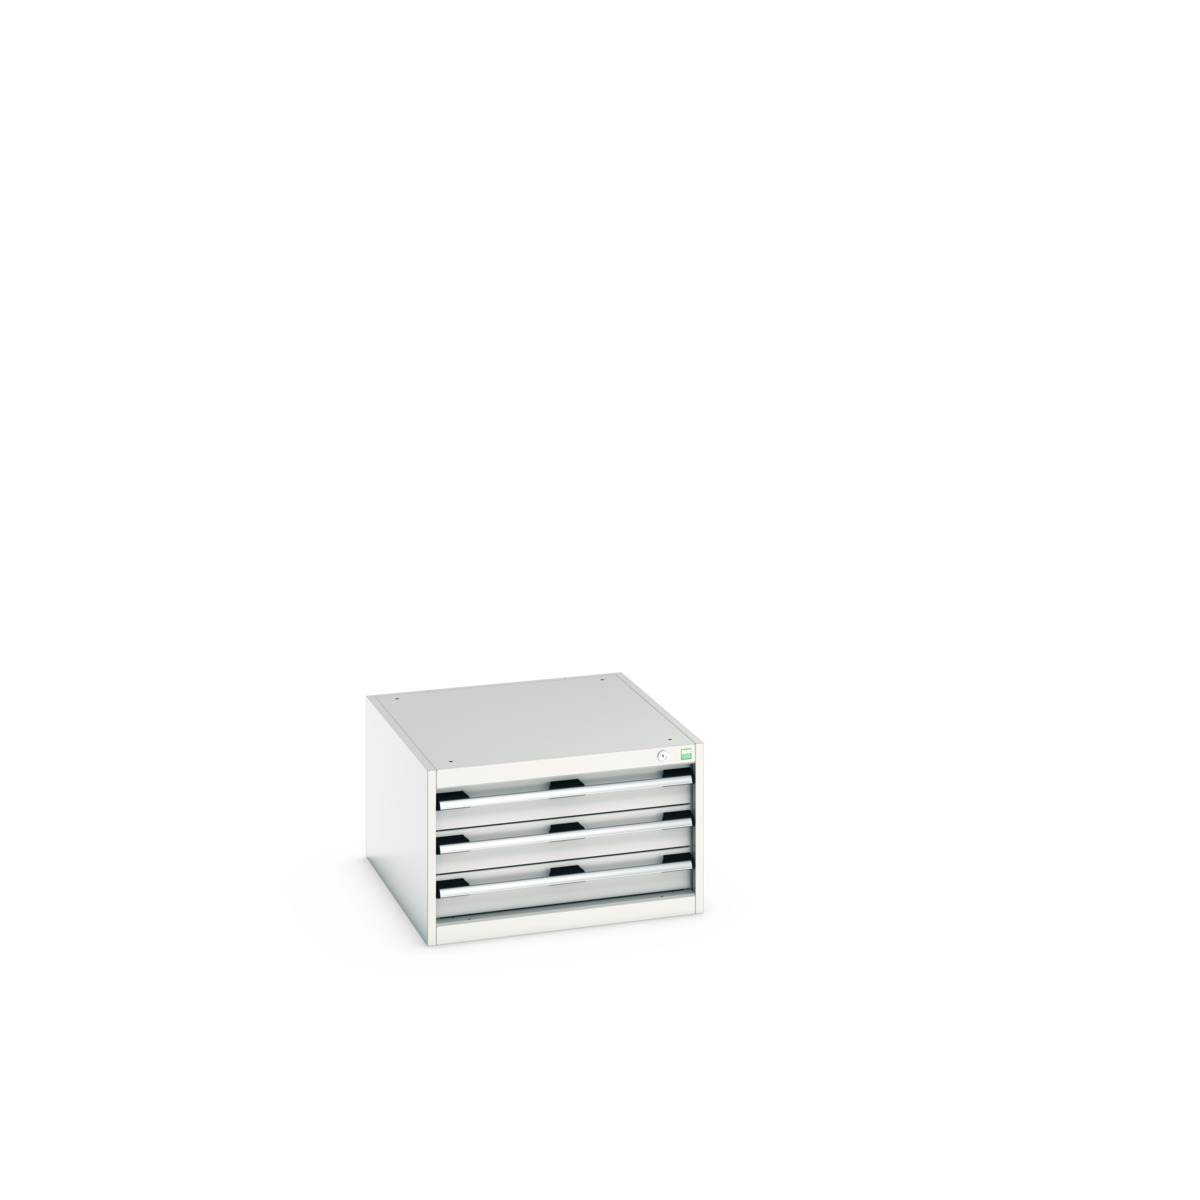 40027096.16V - cubio drawer cabinet